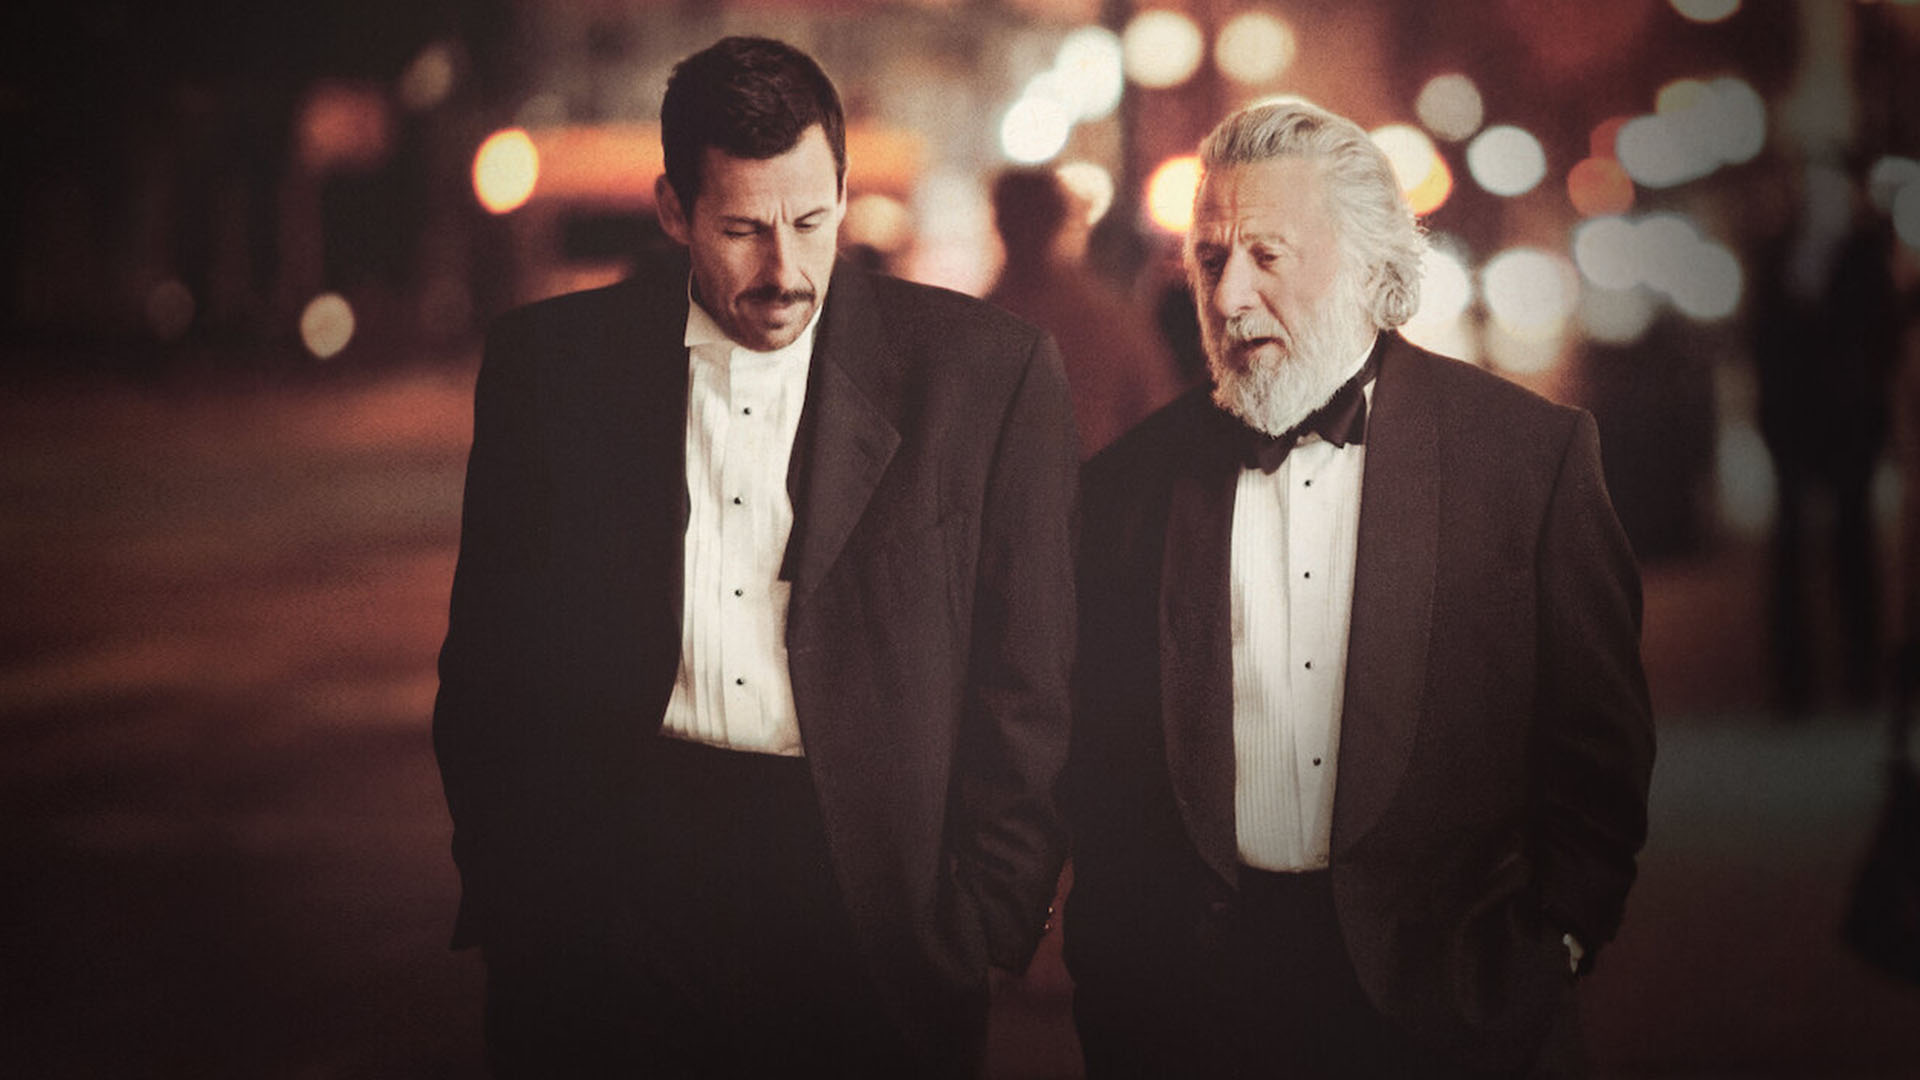 آدام سندلر و داستین هافمن در حال راه رفتن و حرف زدن در فیلم The Meyerowitz Stories